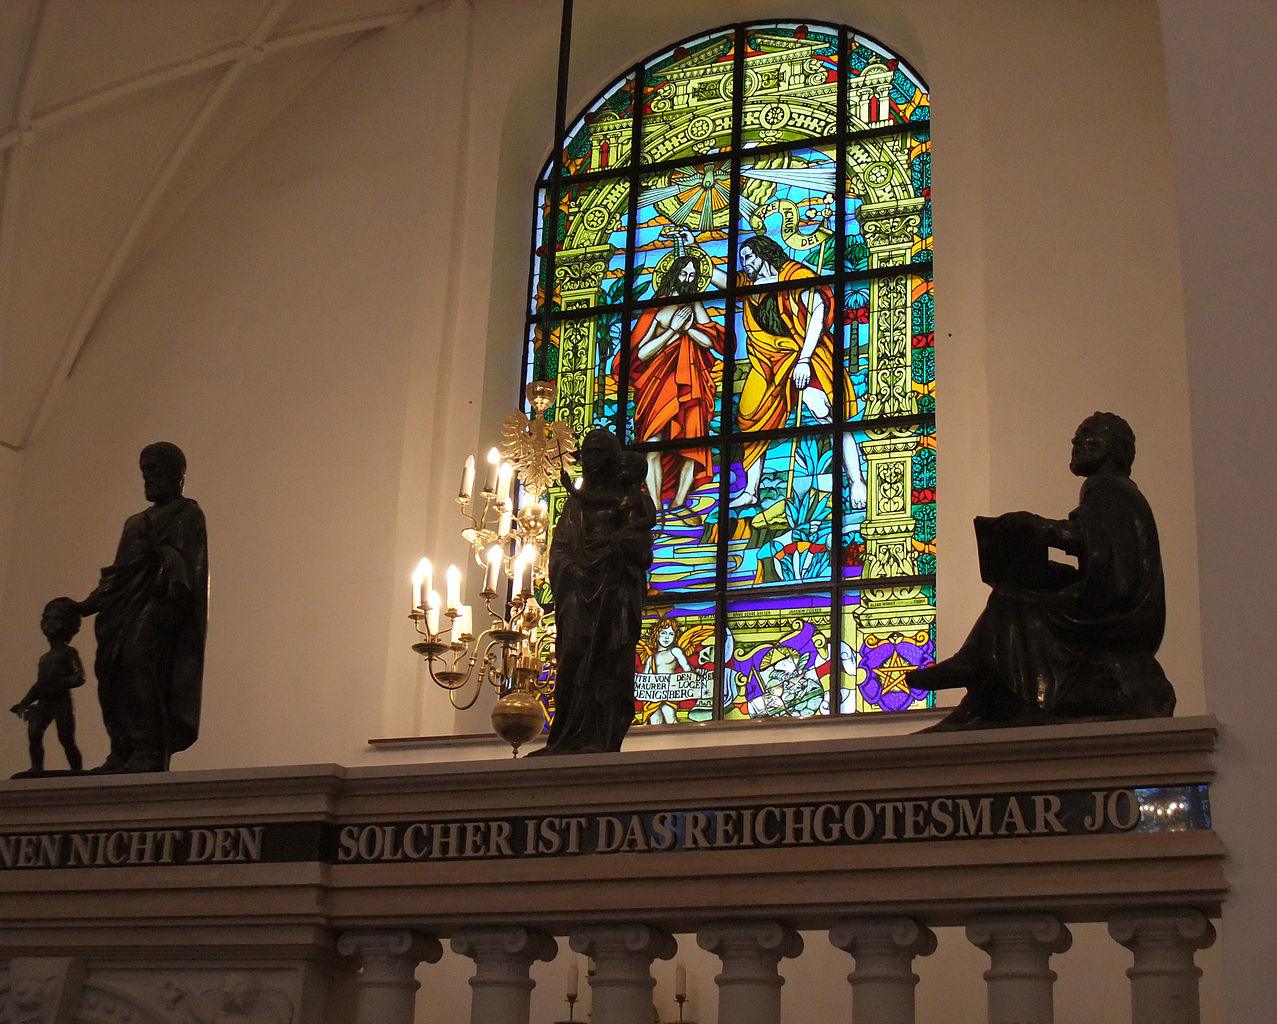 кафедральный собор калининград музей